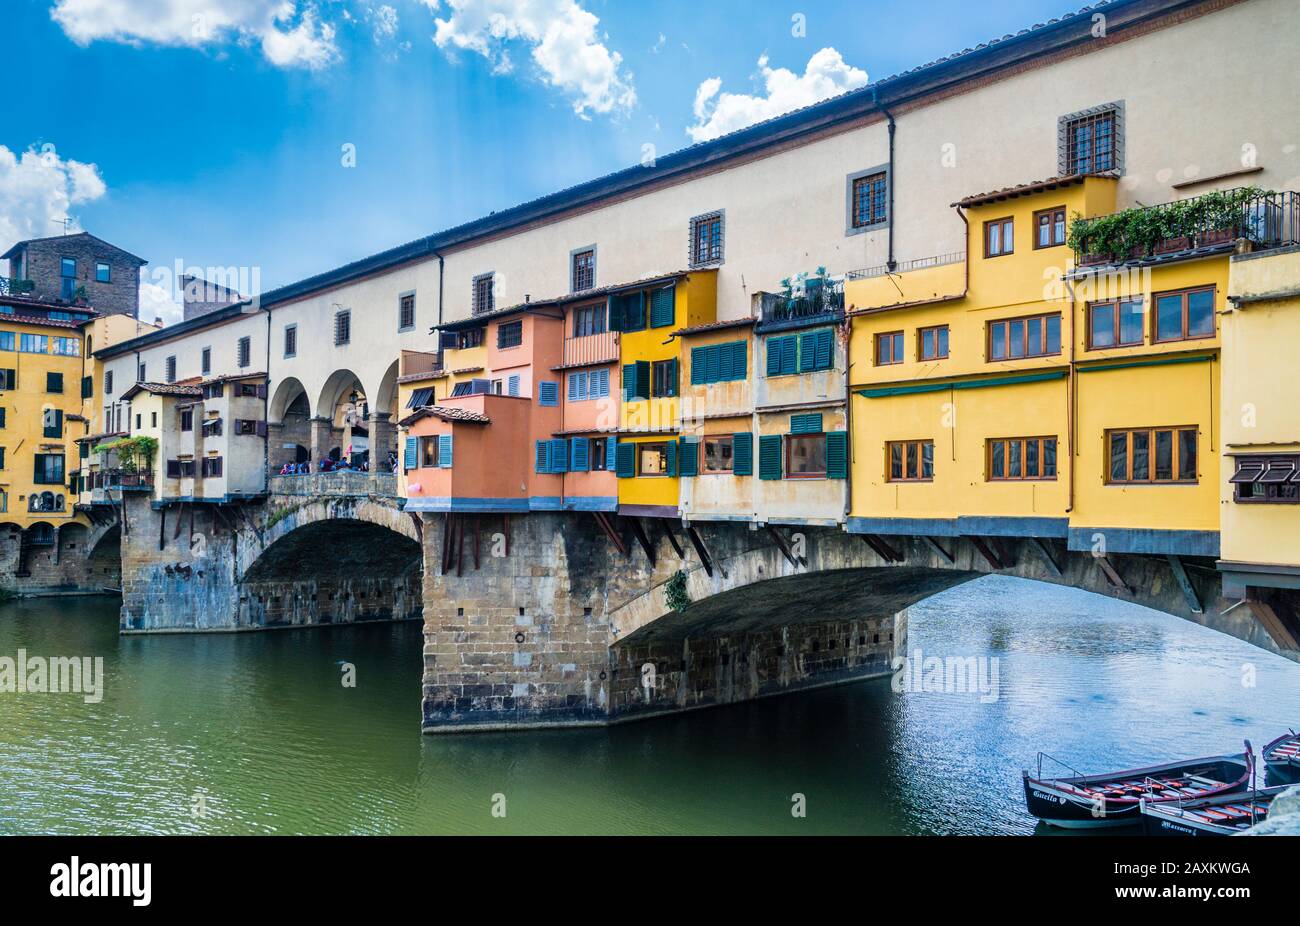 Die Brücke des mittelalterlichen Steinbogens Ponte Vecchio über den Fluss Arno in Florenz wird von den Geschäften der Juweliere, Kunsthändler und Souvenirhändler gesäumt. Stockfoto